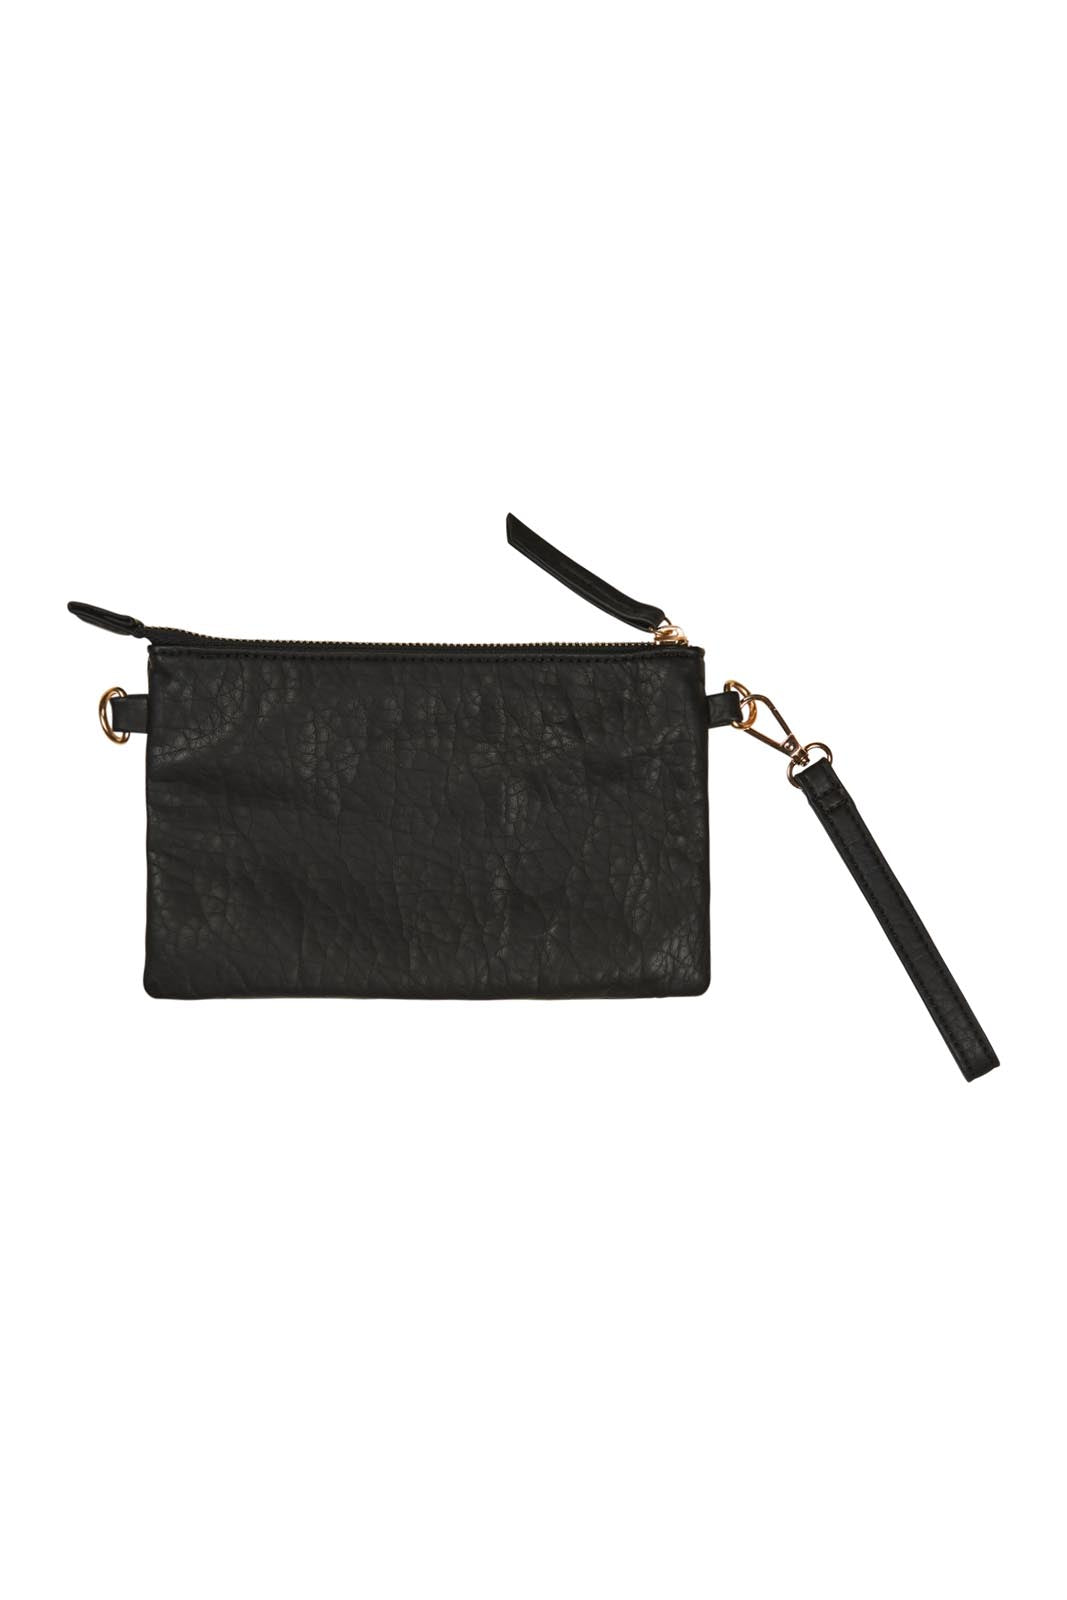 Weekender Bag - Black - eb&ive Bag